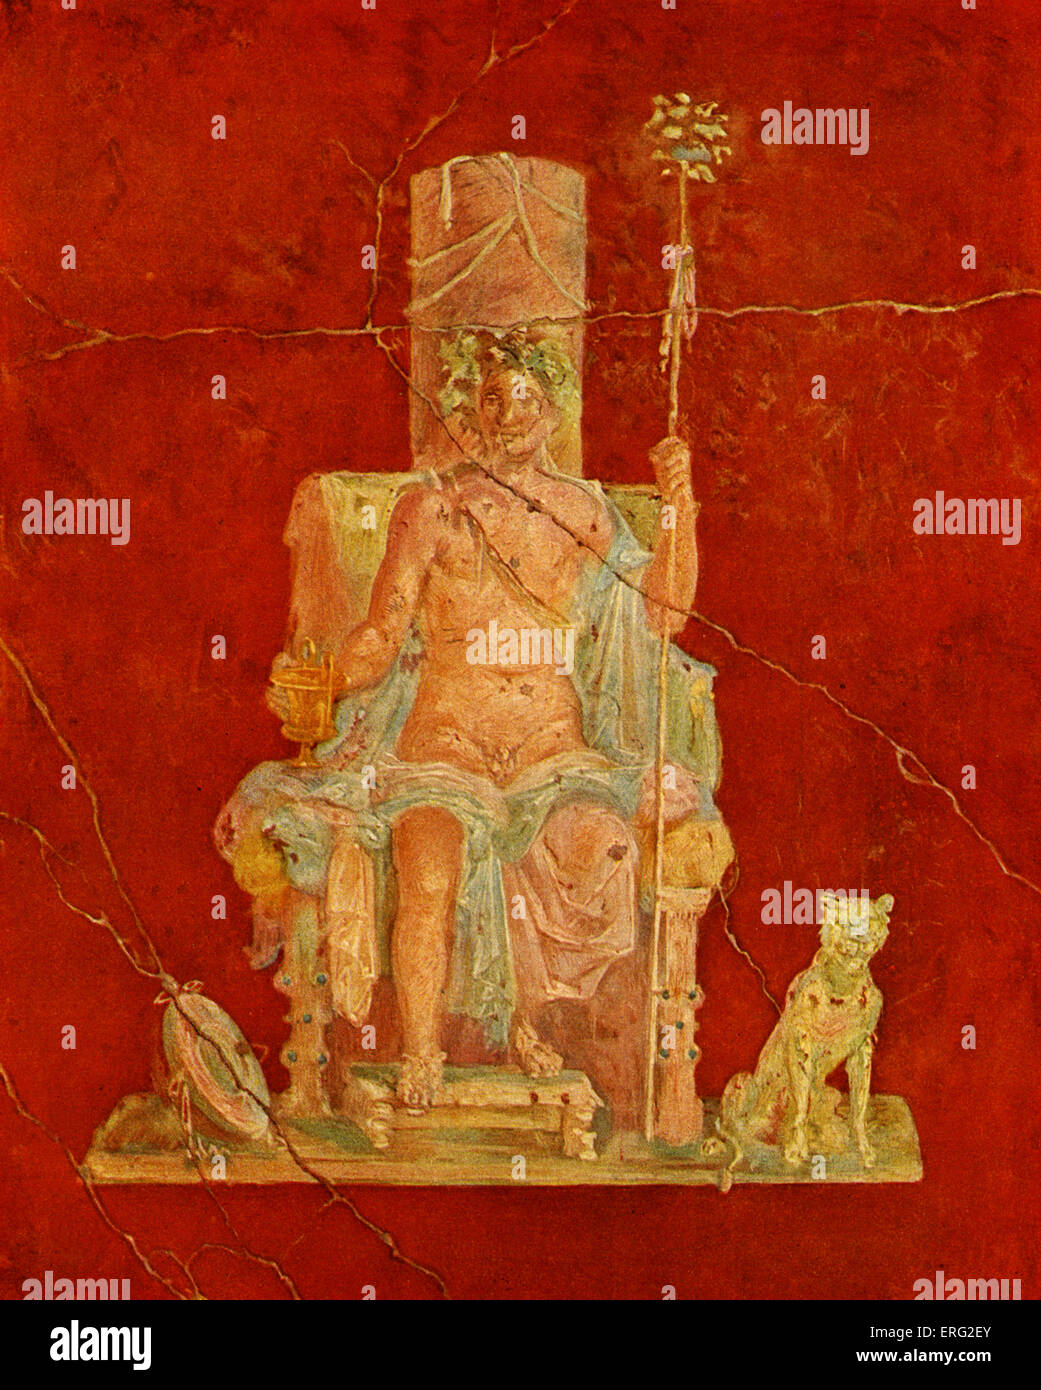 Dionysus sentado en un trono. Fresco en una casa de Pompeya. Foto de stock